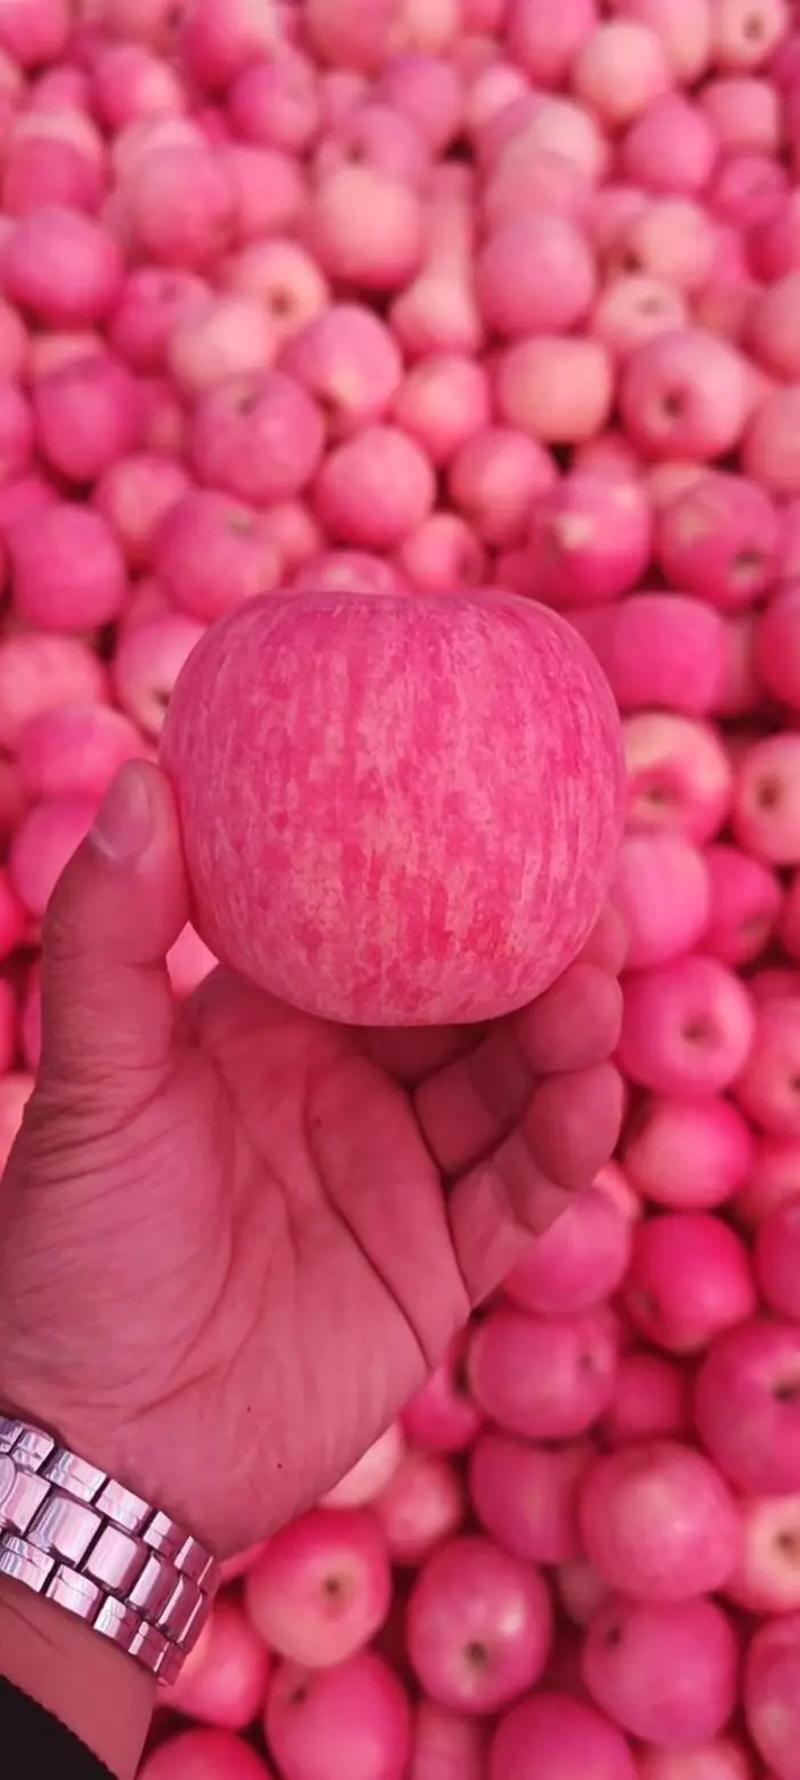 【优质苹果】山东精品红富士苹果产地一手货源批发